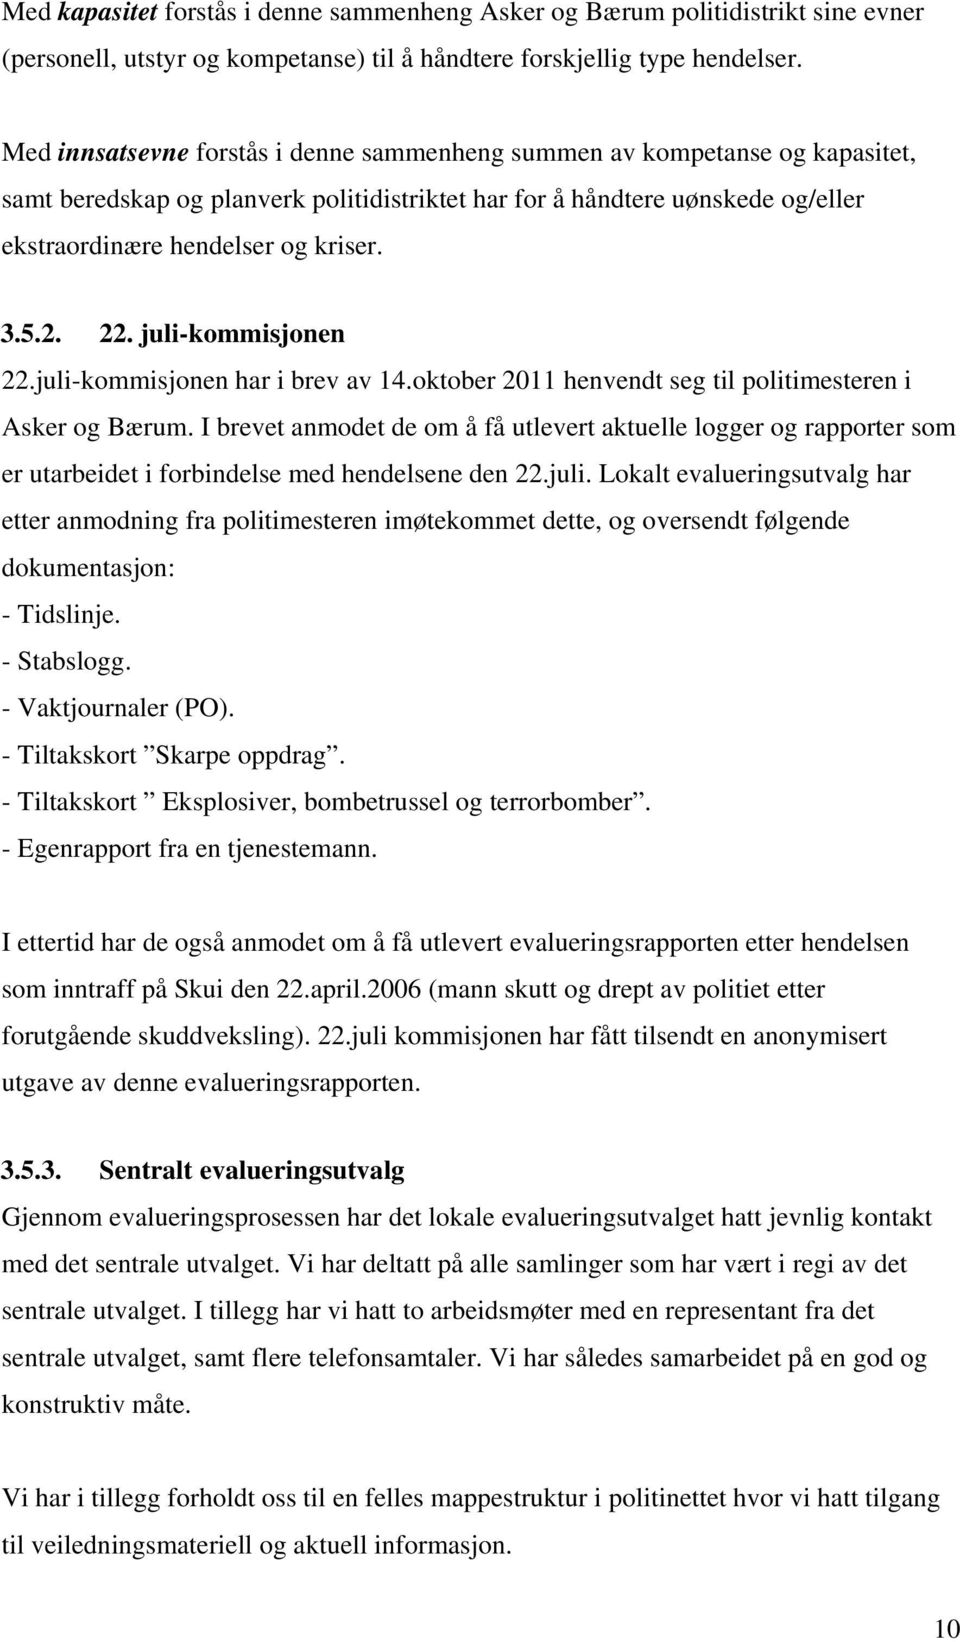 2. 22. juli-kommisjonen 22.juli-kommisjonen har i brev av 14.oktober 2011 henvendt seg til politimesteren i Asker og Bærum.